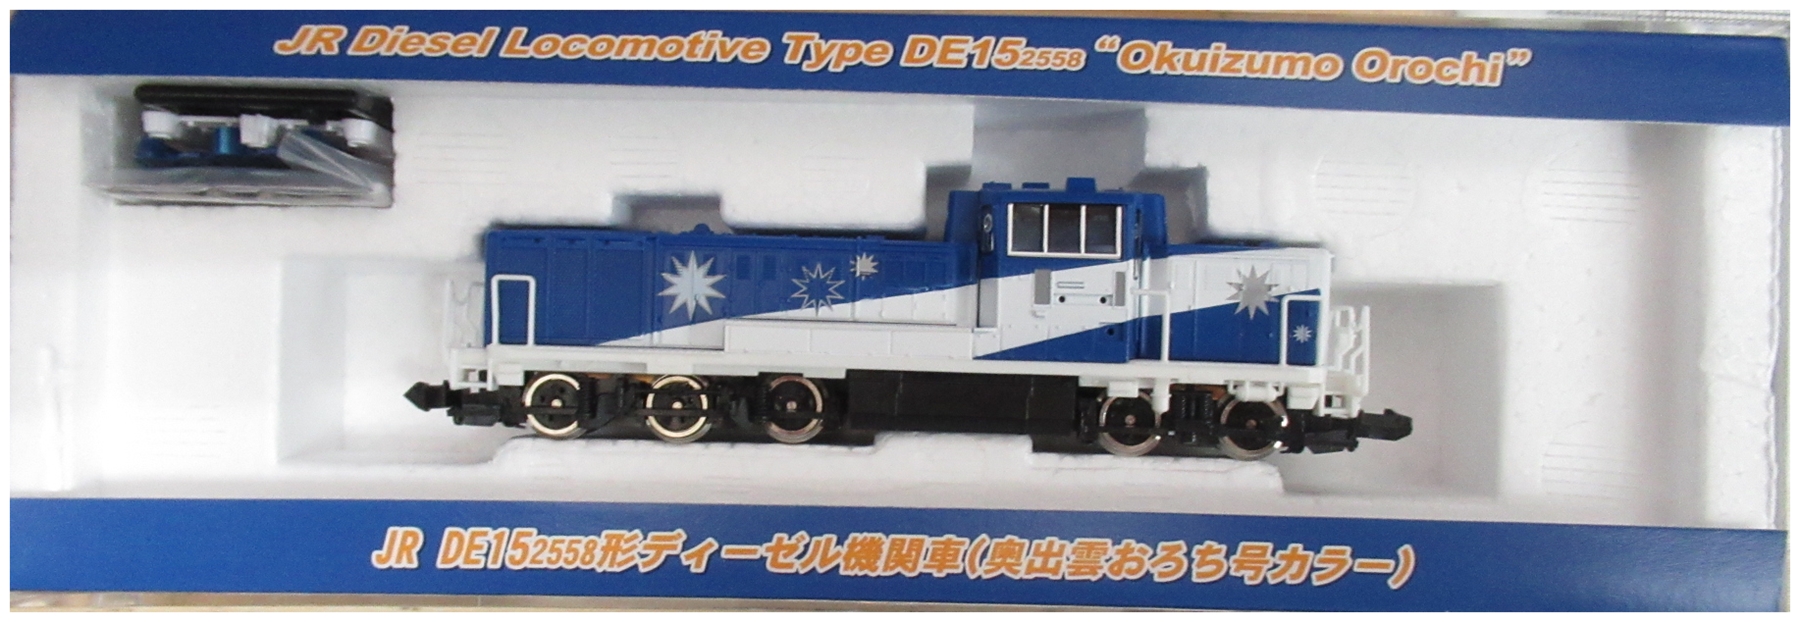 tomixJR DE15 2558形ディーゼル機関車(奥出雲おろち号カラー) - 鉄道模型